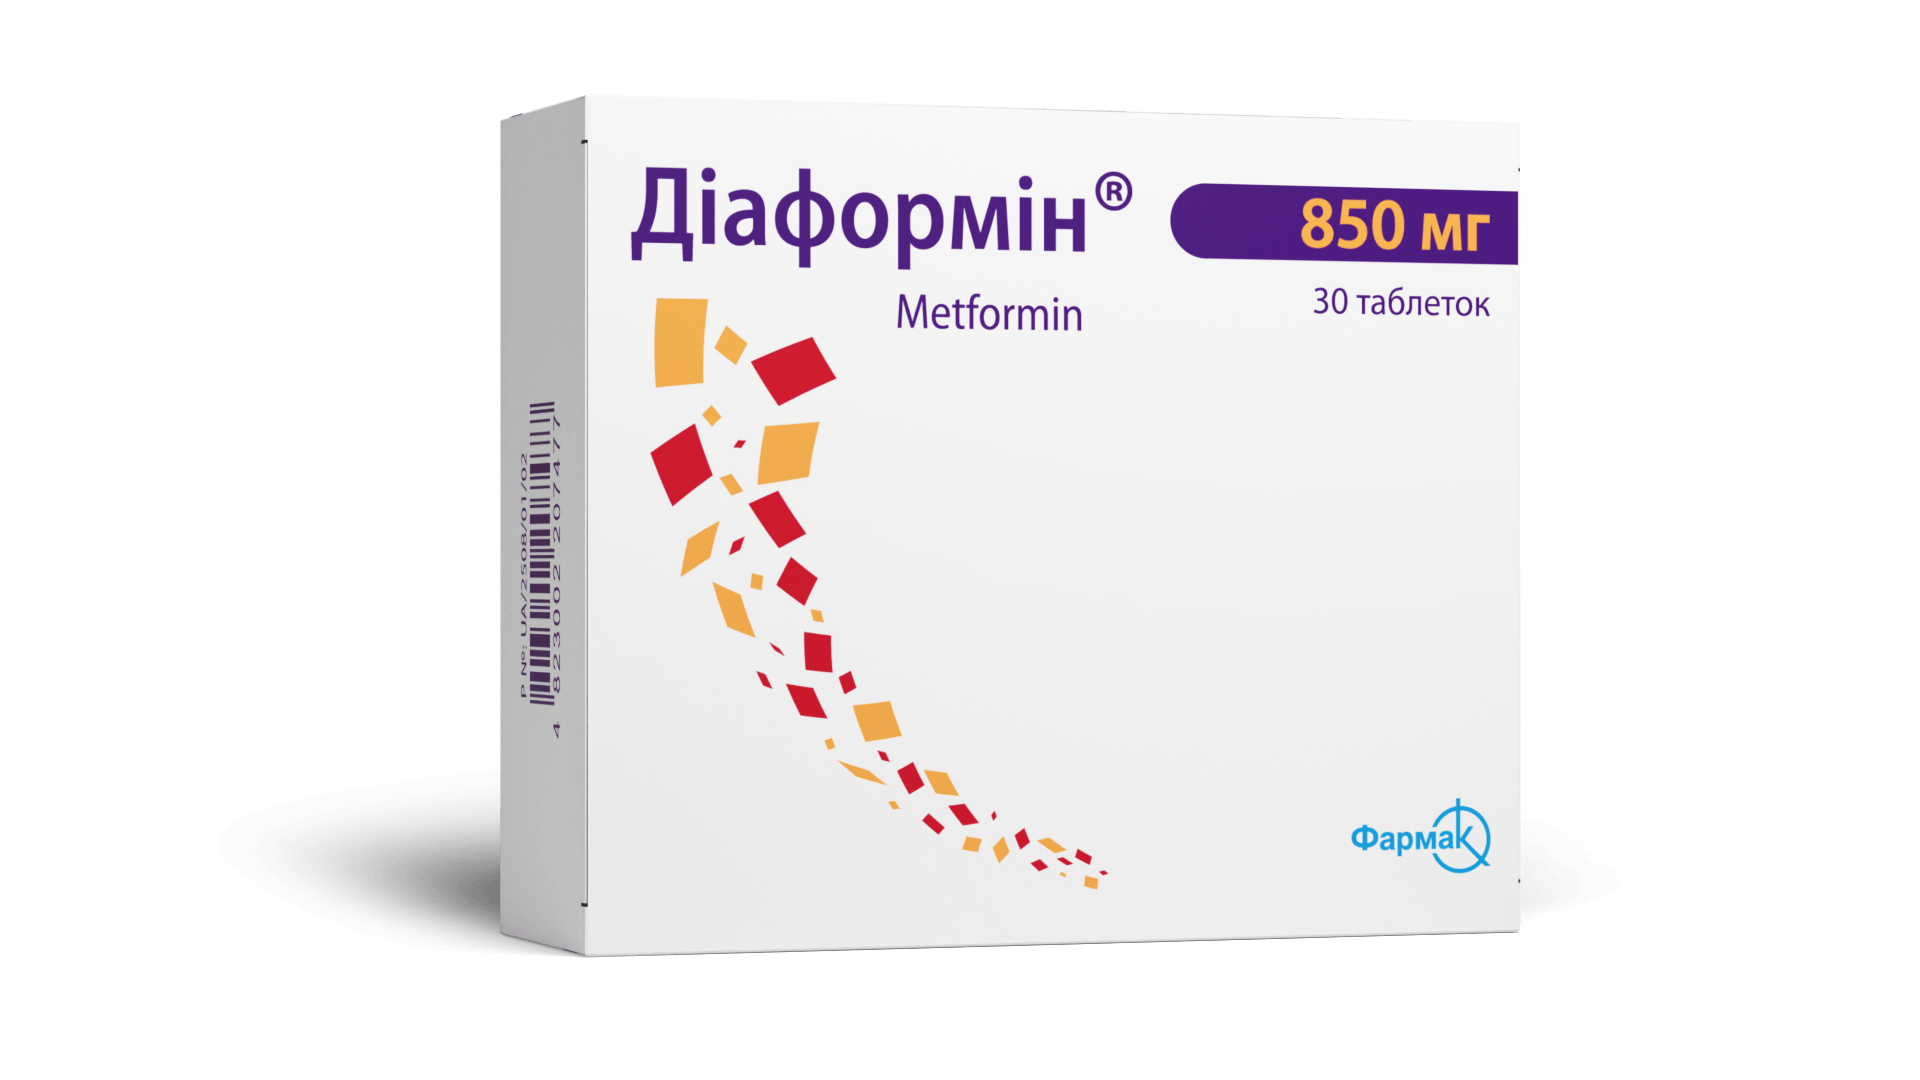 Діаформін® 850 мг (1)